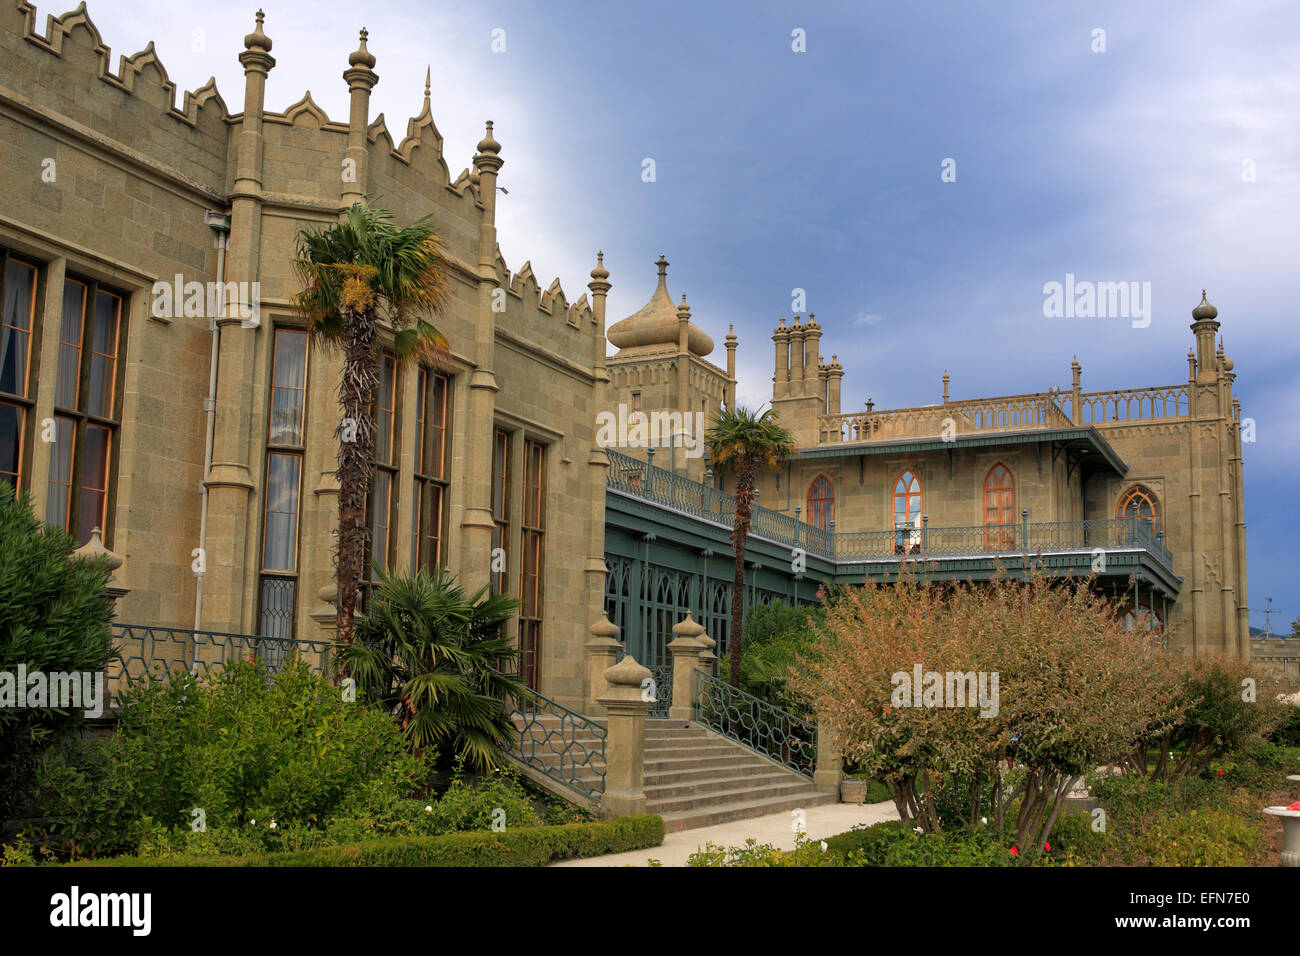 Vorontsov Palace (1848, architect Edward Blore), Alupka, Crimea, Ukraine Stock Photo